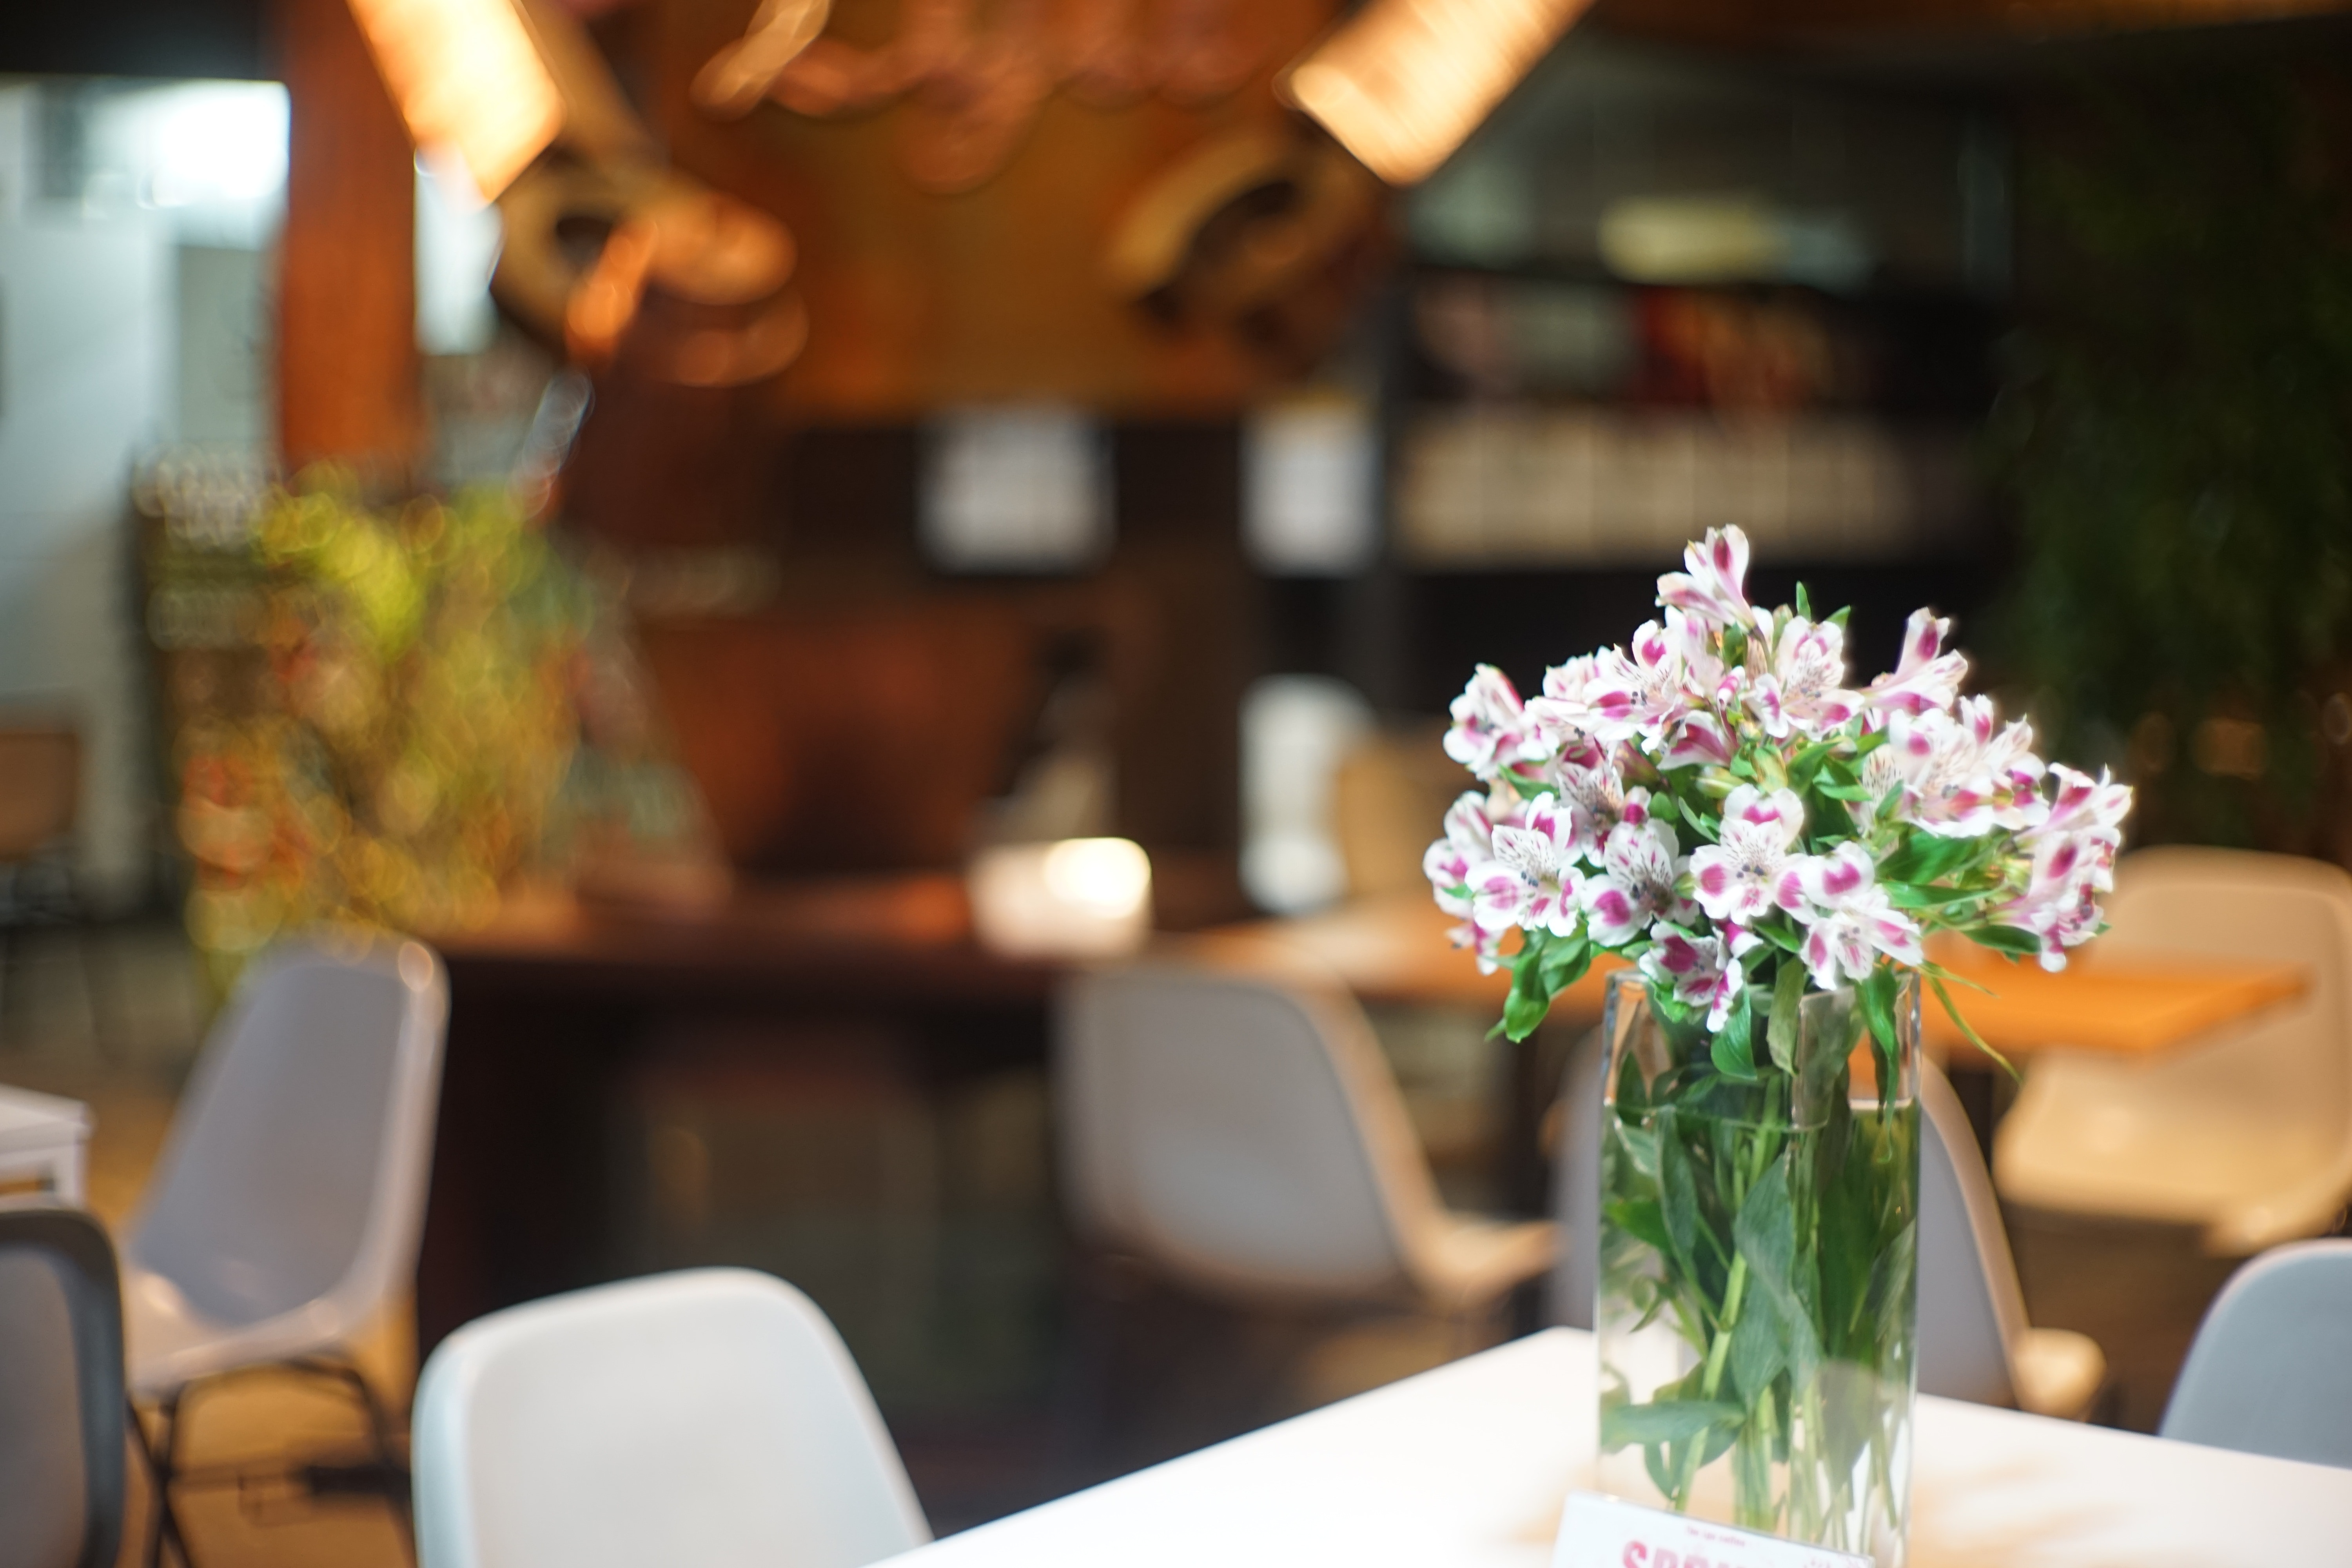 Cafe, Flowers, Still Life, flower, vase